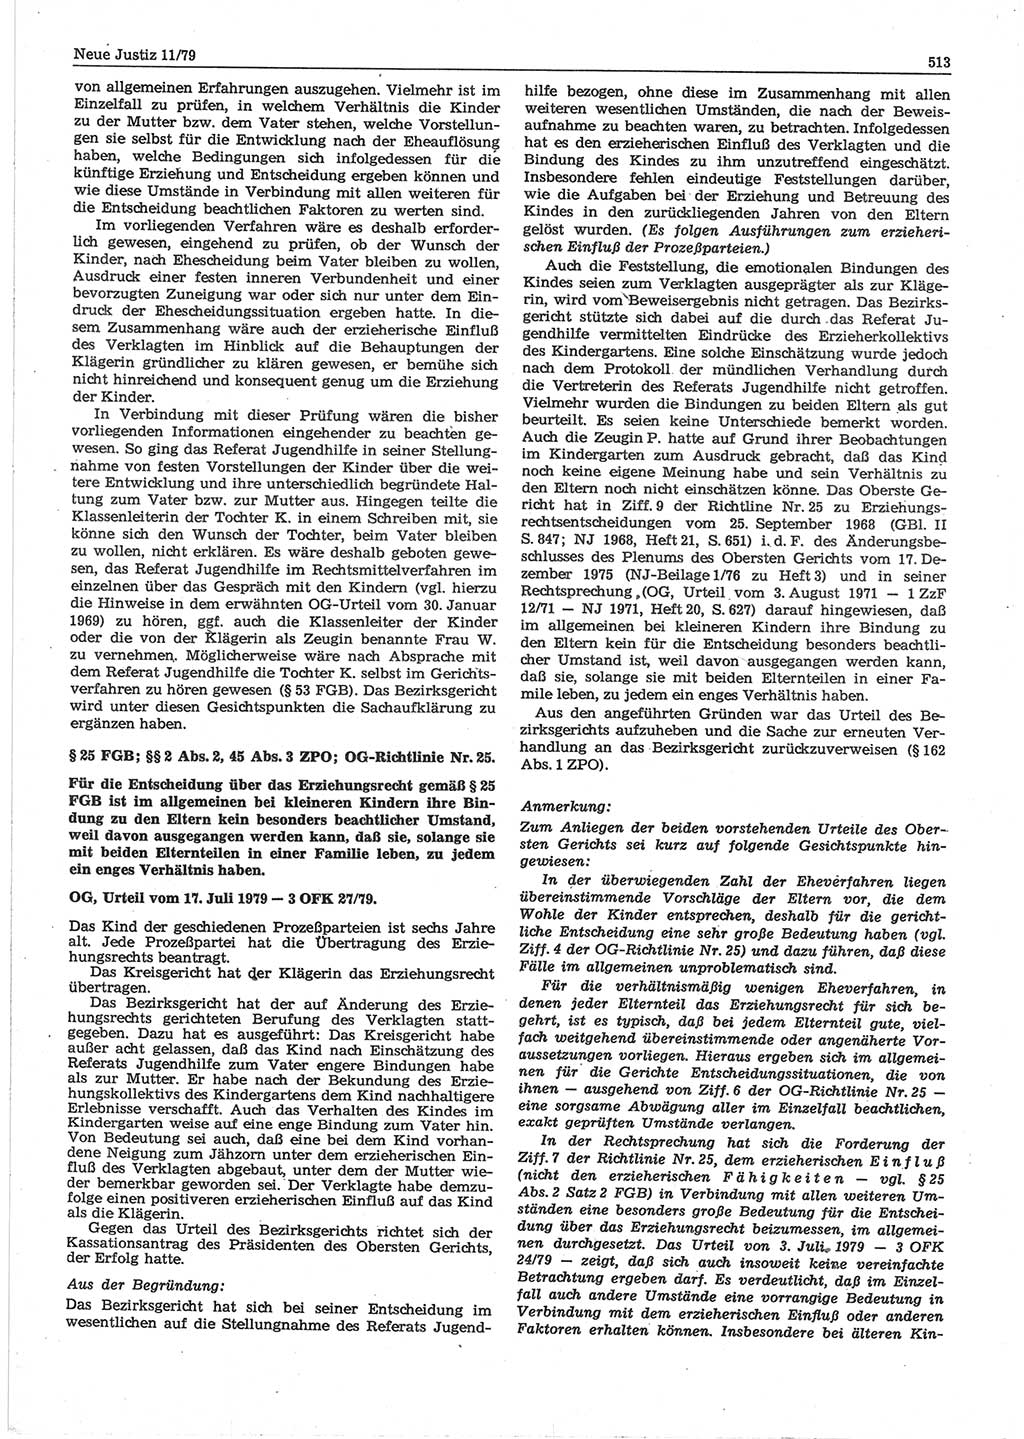 Neue Justiz (NJ), Zeitschrift für sozialistisches Recht und Gesetzlichkeit [Deutsche Demokratische Republik (DDR)], 33. Jahrgang 1979, Seite 513 (NJ DDR 1979, S. 513)